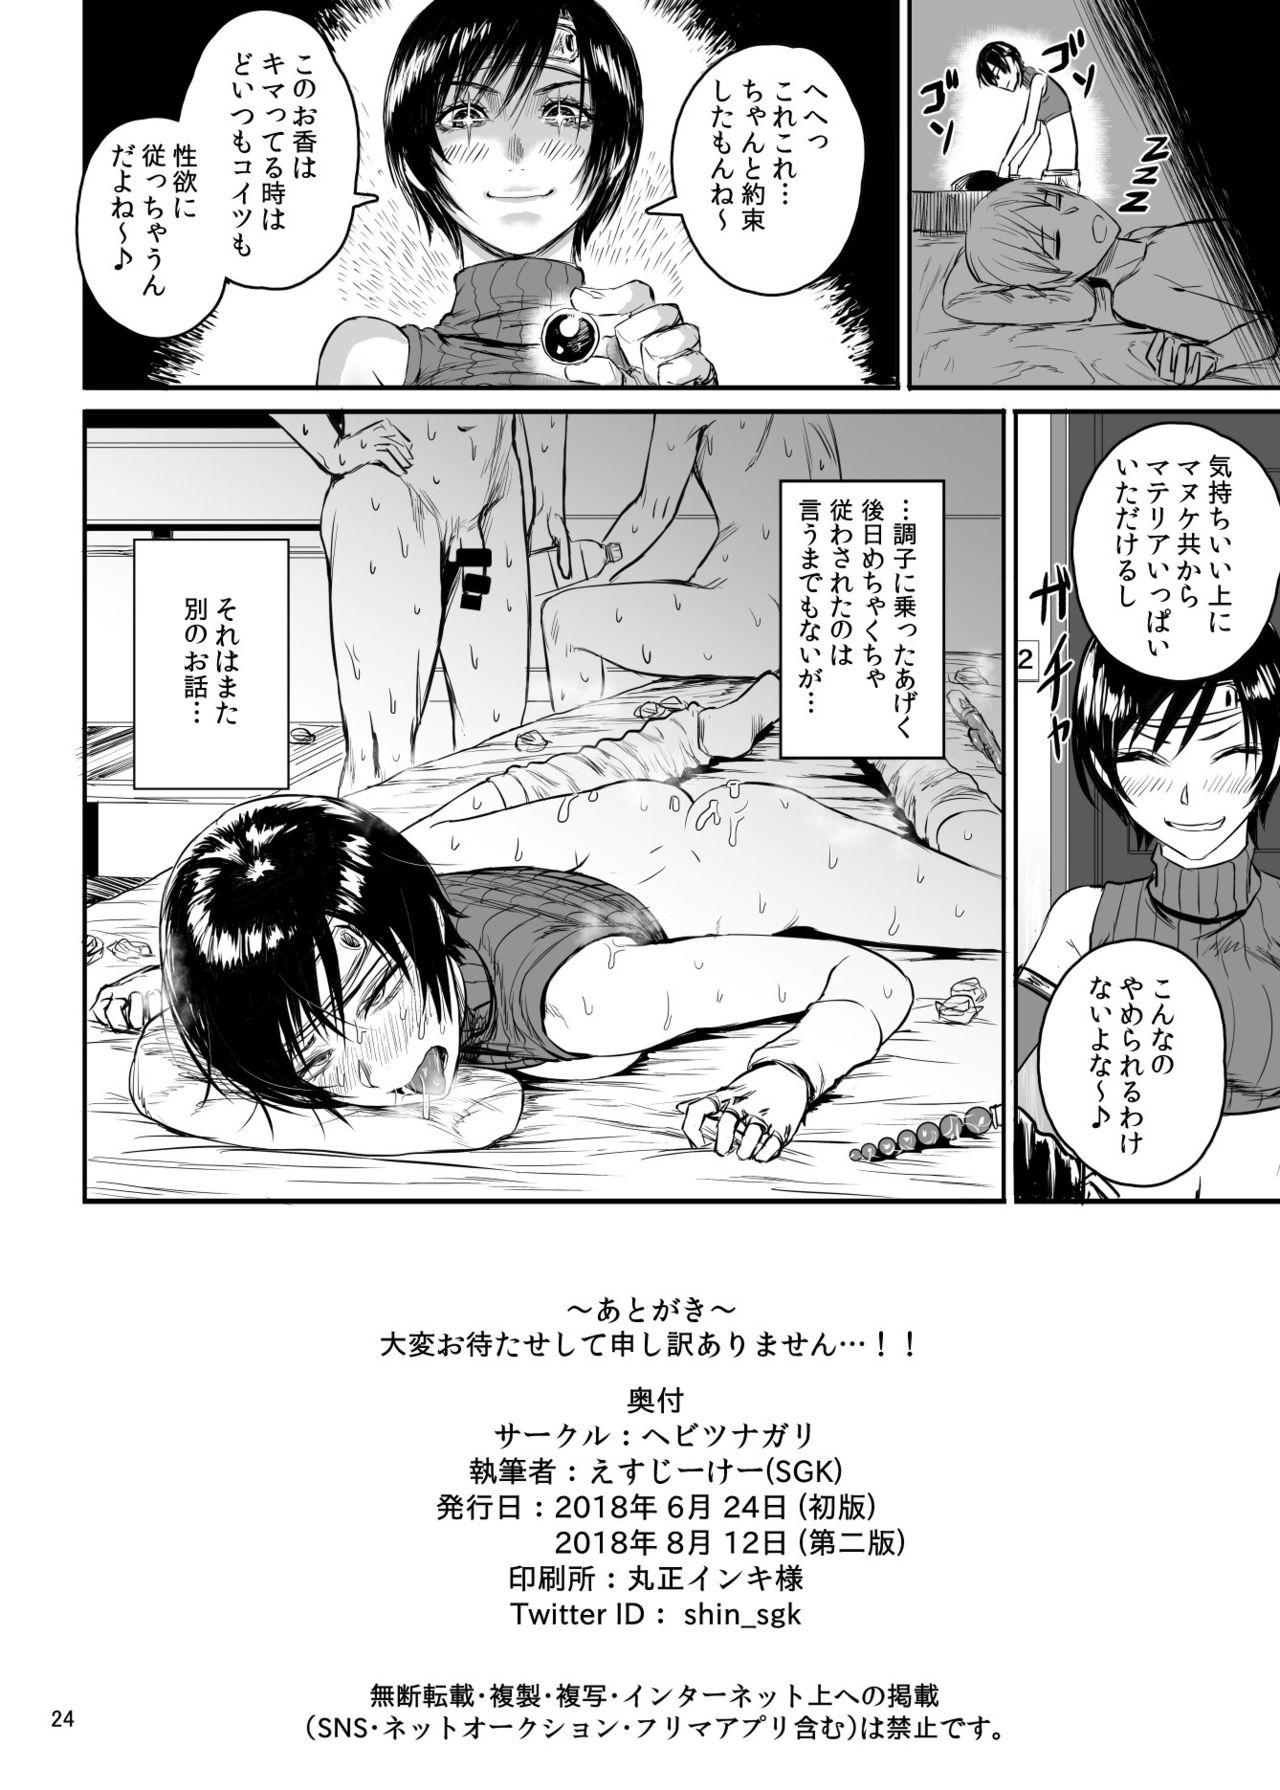 Spreading Shinobi no Musume wa Enkou Zakari Kansei Shimashita Ban - Final fantasy vii Spanish - Page 25